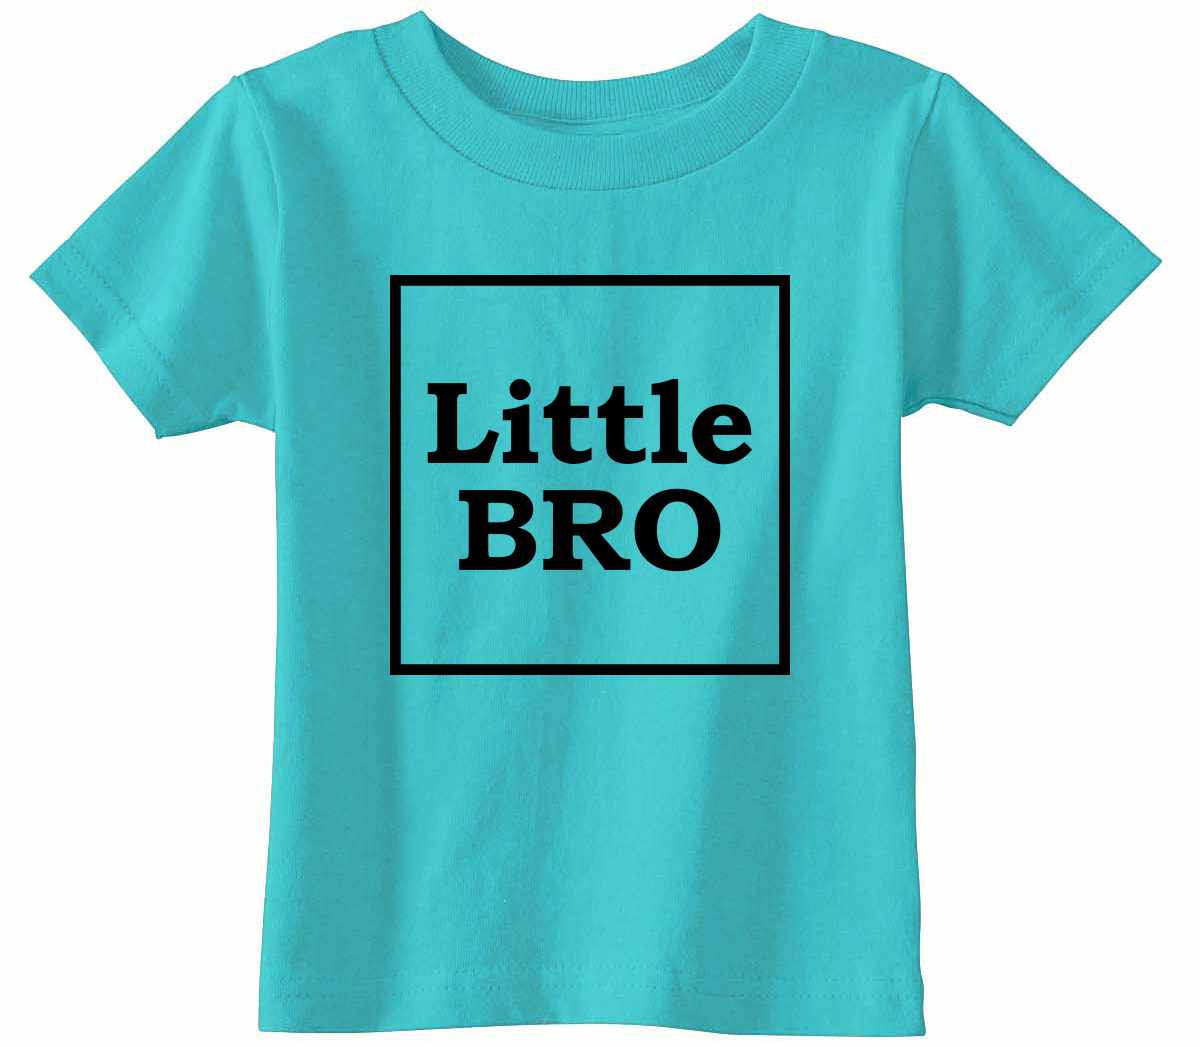 Little Bro on Infant-Toddler T-Shirt (#1247-7)